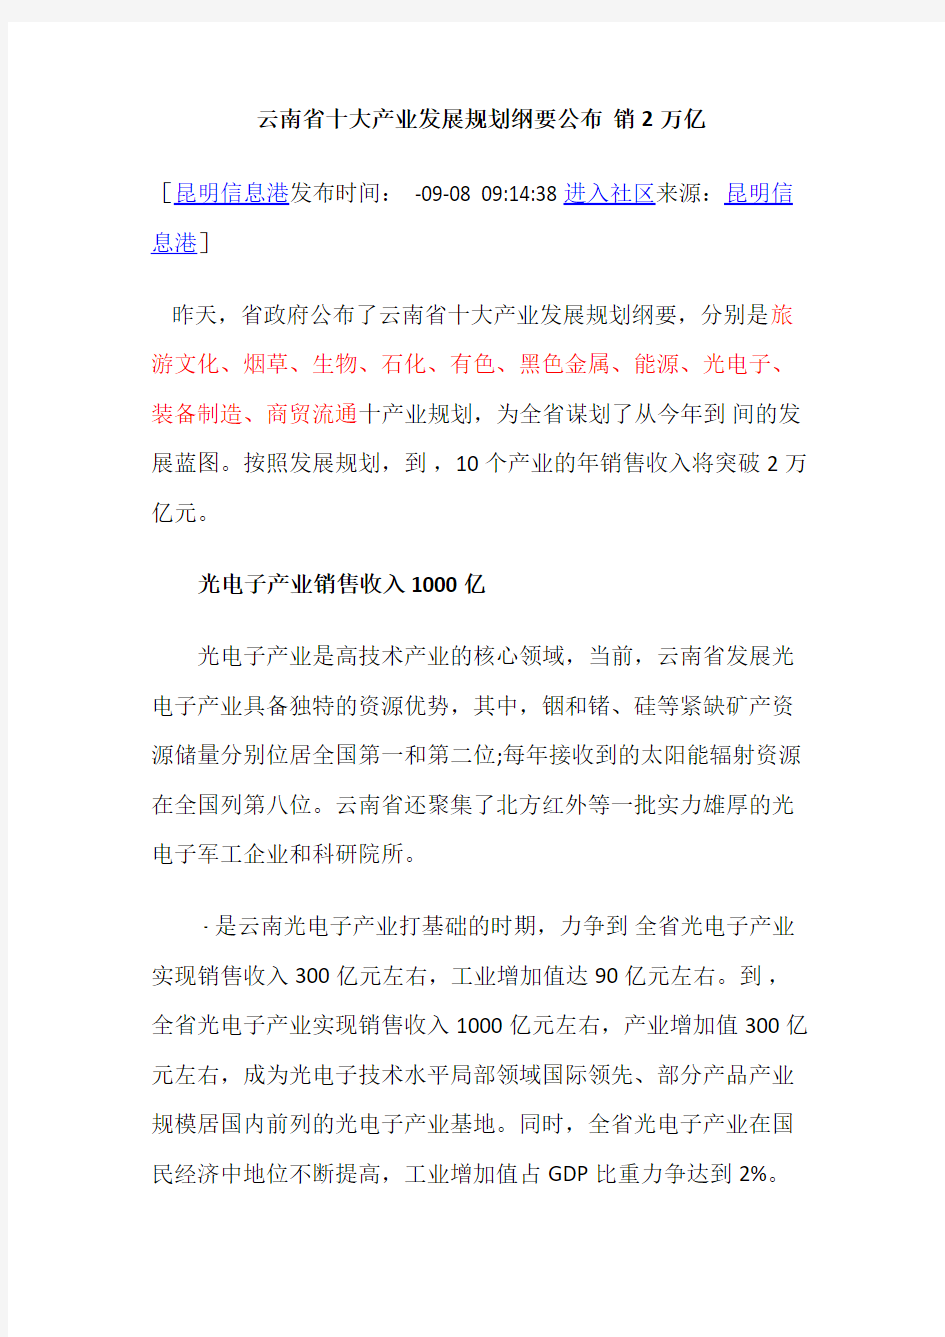 云南省十大产业发展规划纲要公布